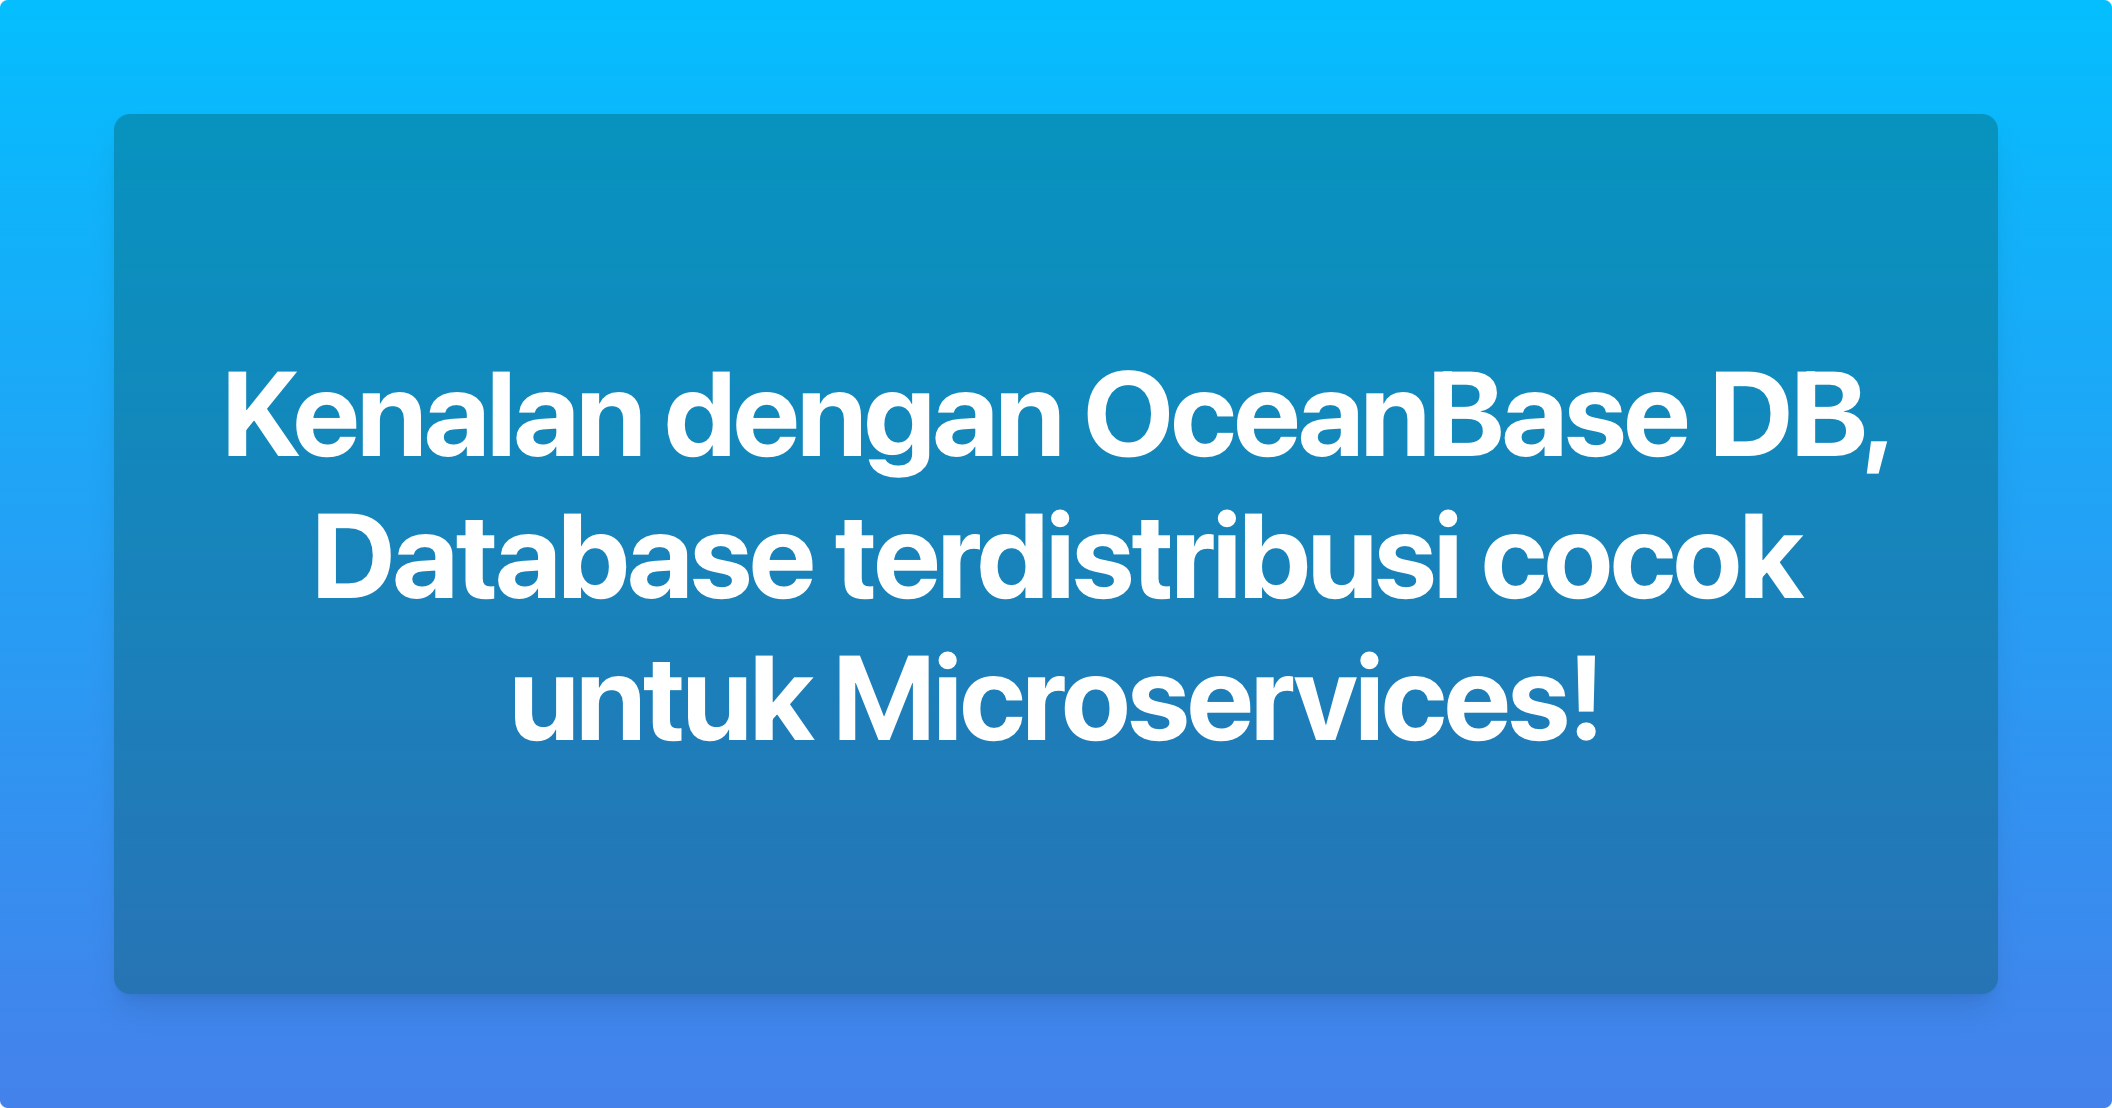 Kenalan dengan OceanBase DB, si Database terdistribusi cocok untuk Microservices!
